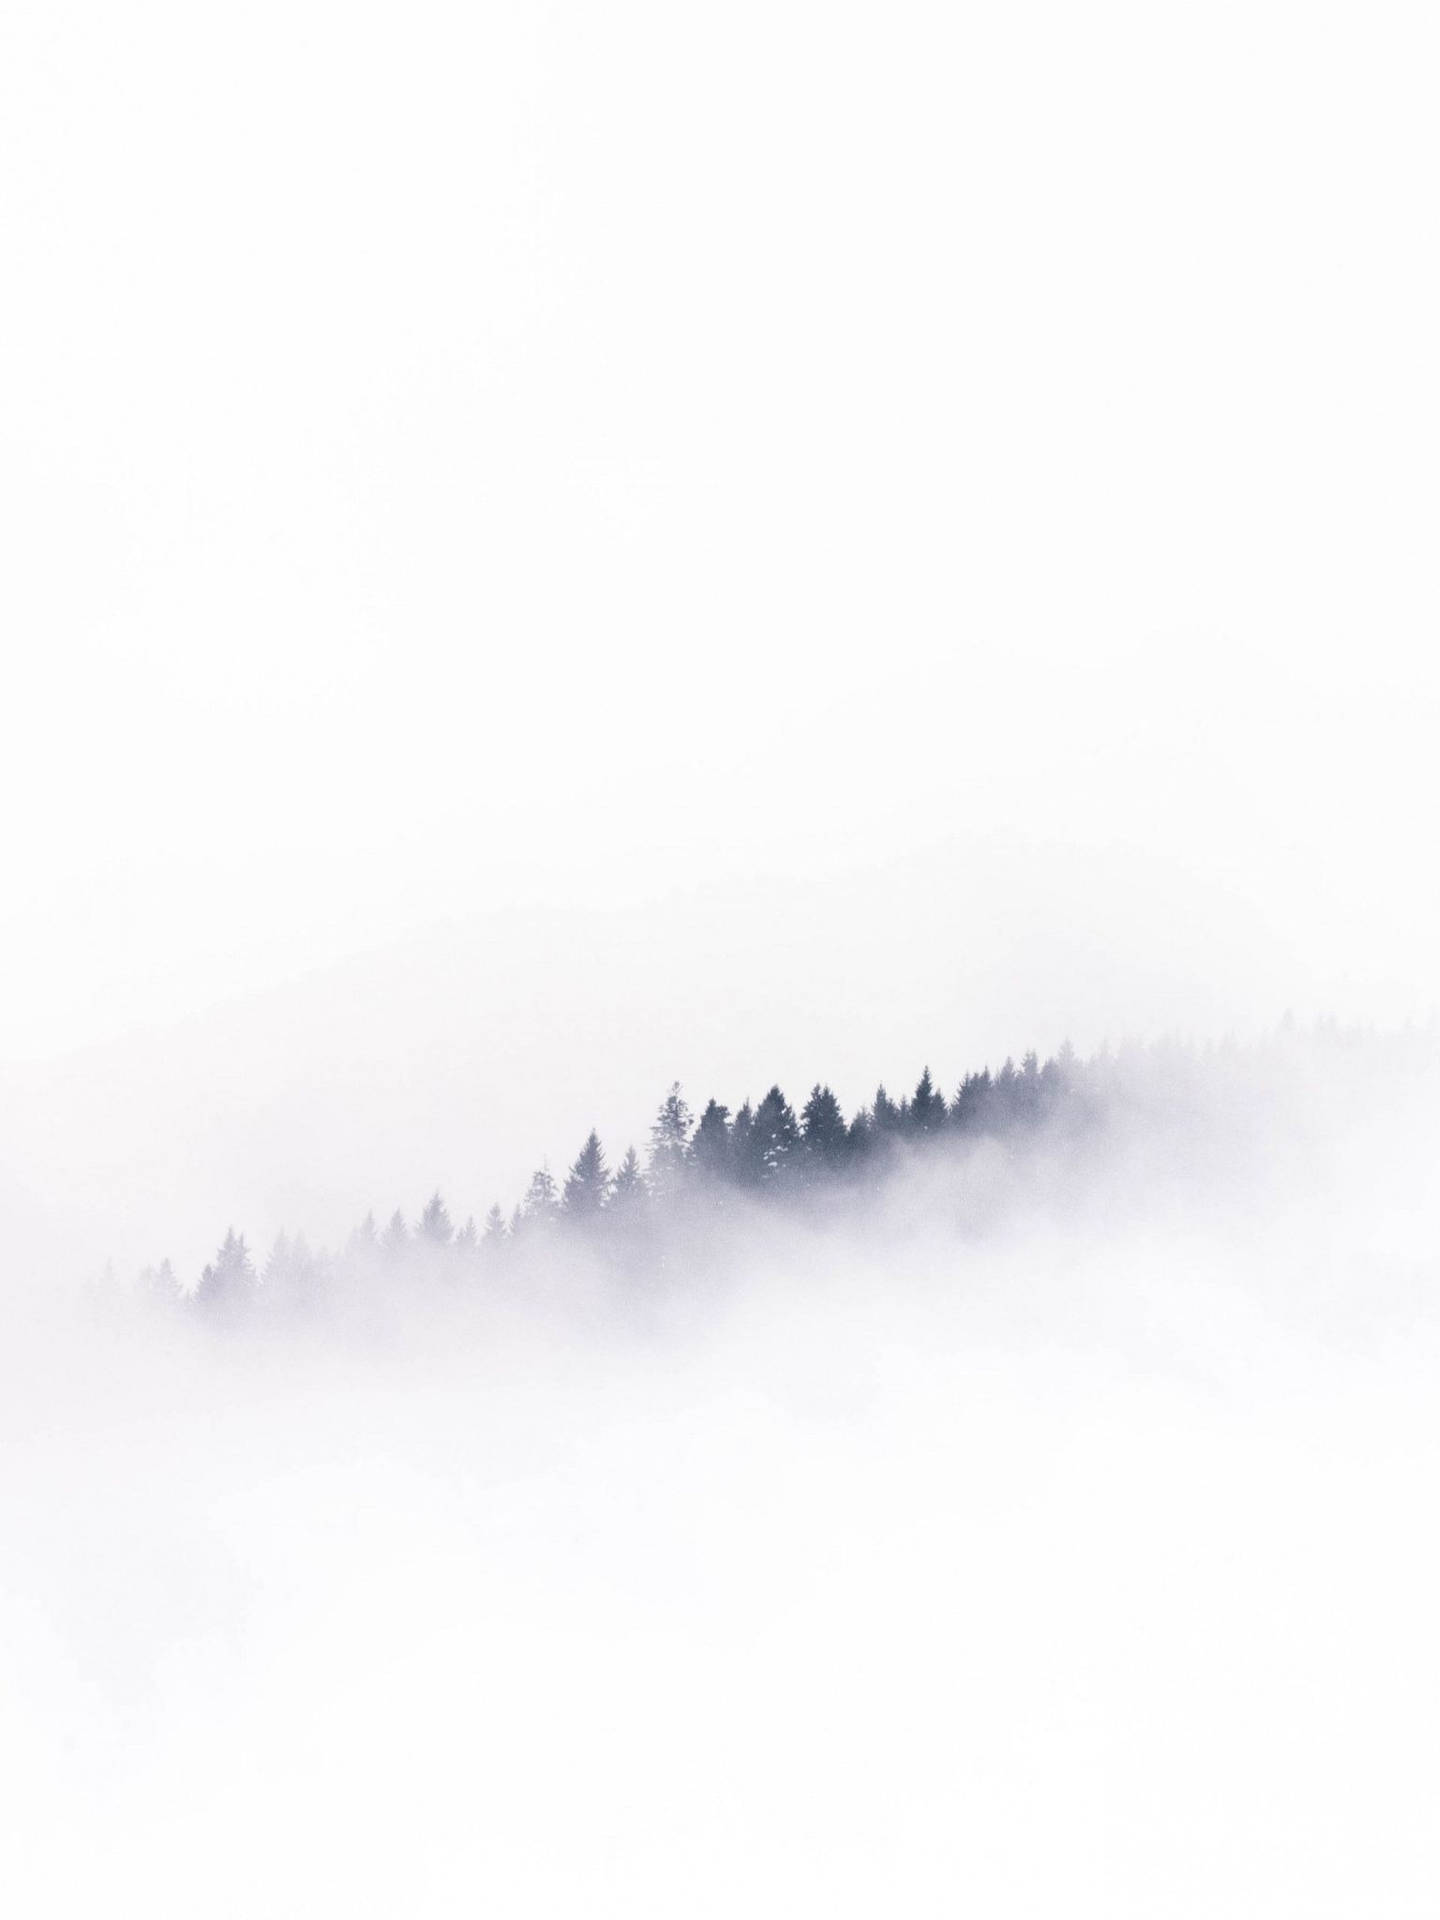 Foggy Forest White Minimalist